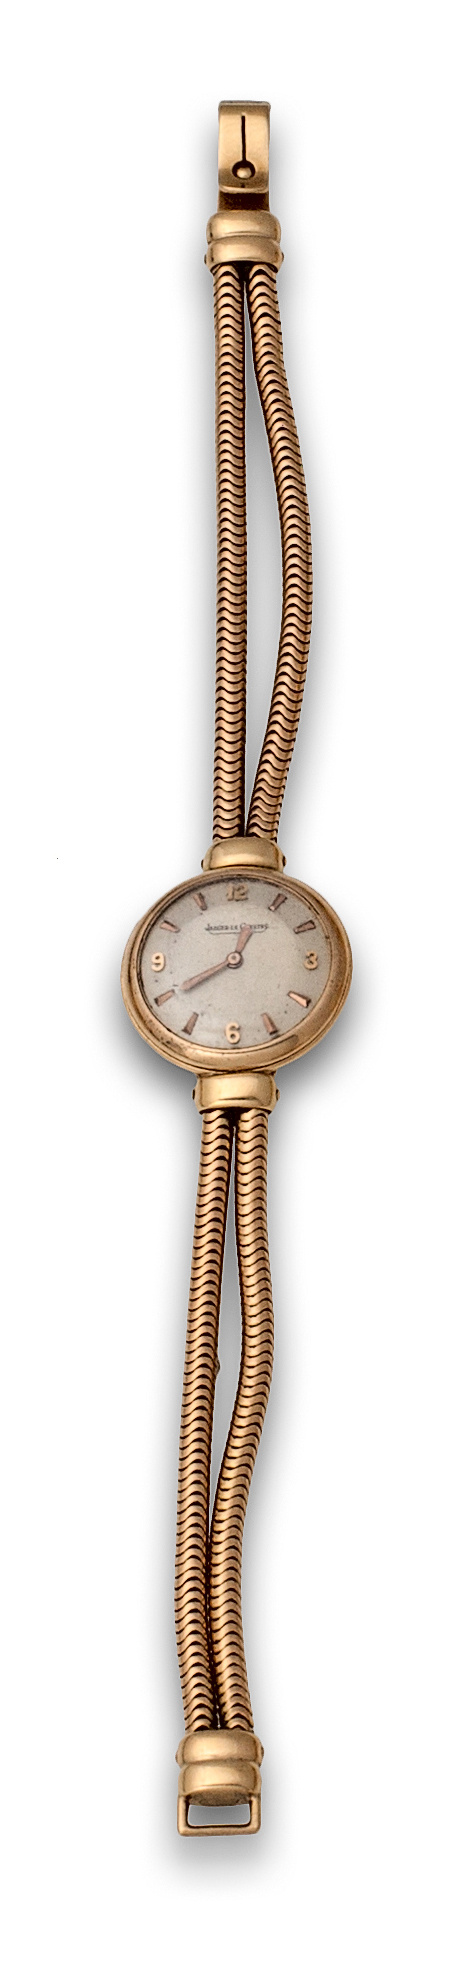 Reloj de pulsera para señora JAEGER LE COULTRE años 50 en o